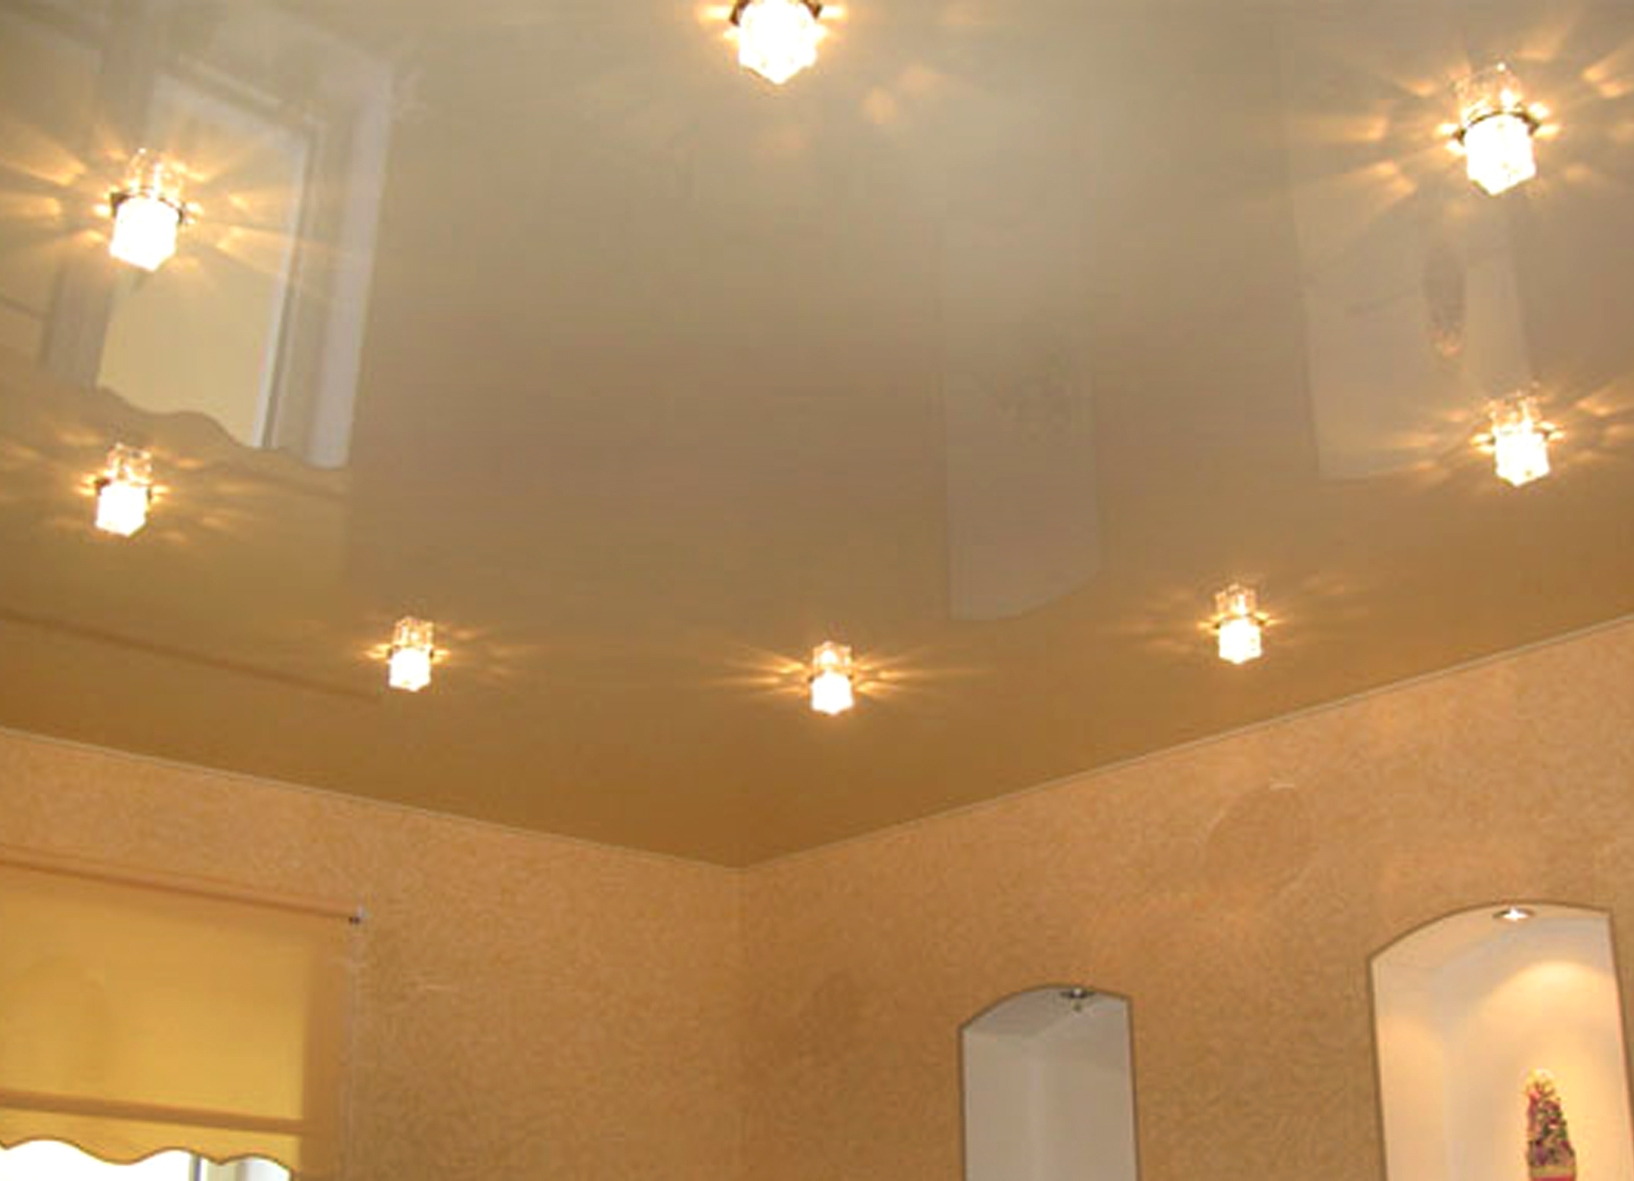 سلبيات وإيجابيات السقف تمتد في عدة مستويات لغرفة المعيشة